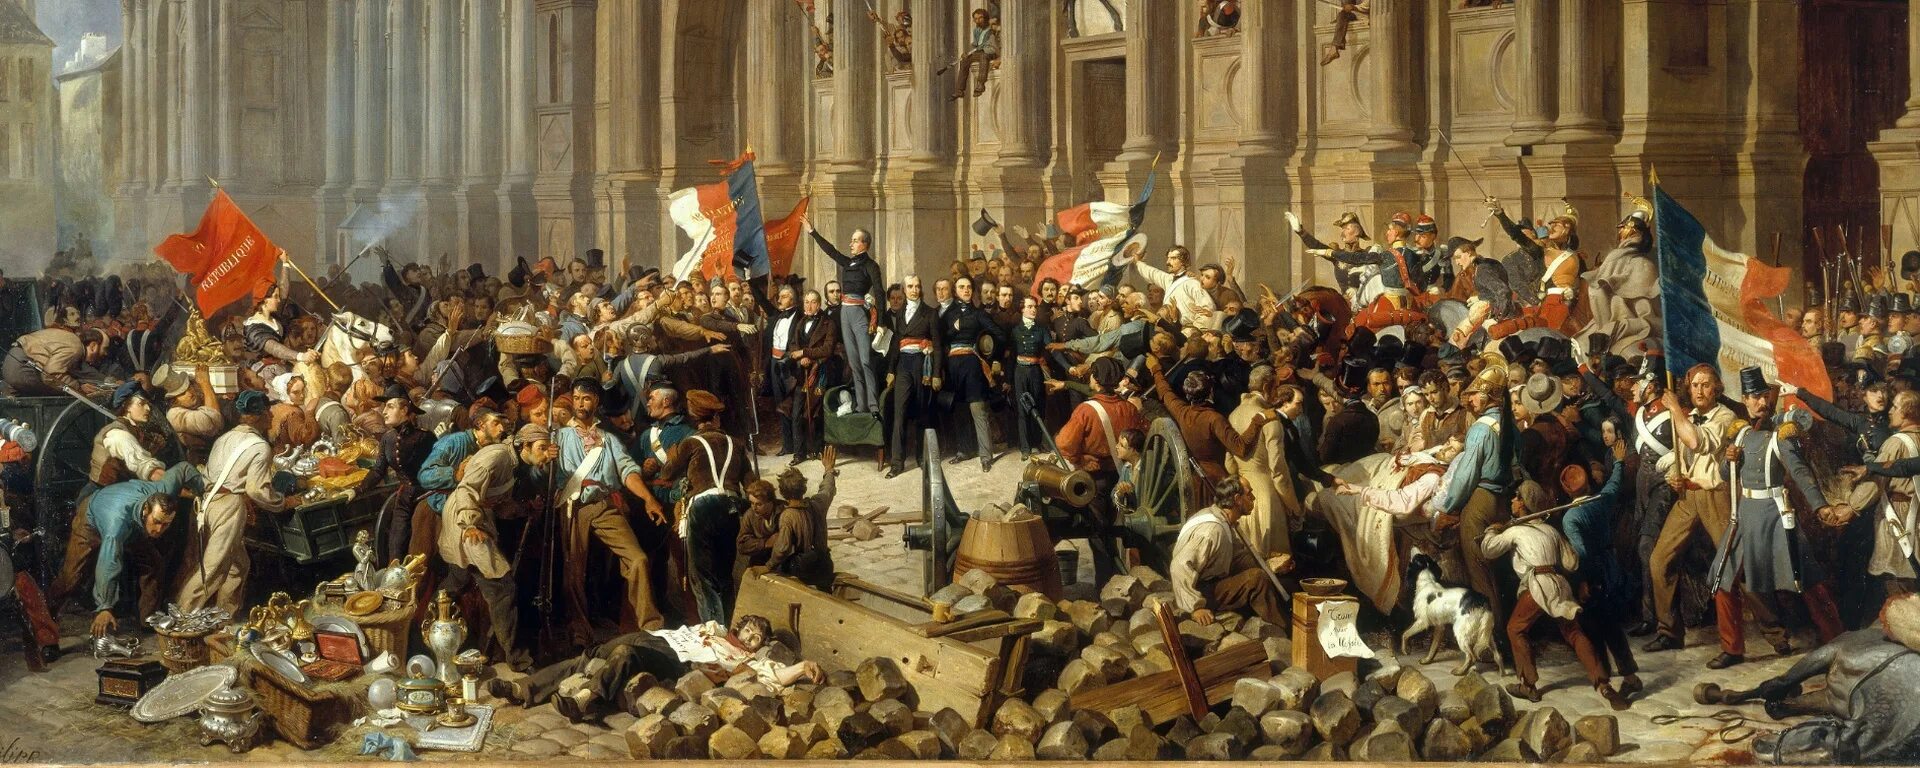 Демократ революционер времен французской буржуазной революции. Германский национализм 19 век. Германская революция 1848. Революция 1848 года во Франции. Буржуазная революция в Германии.